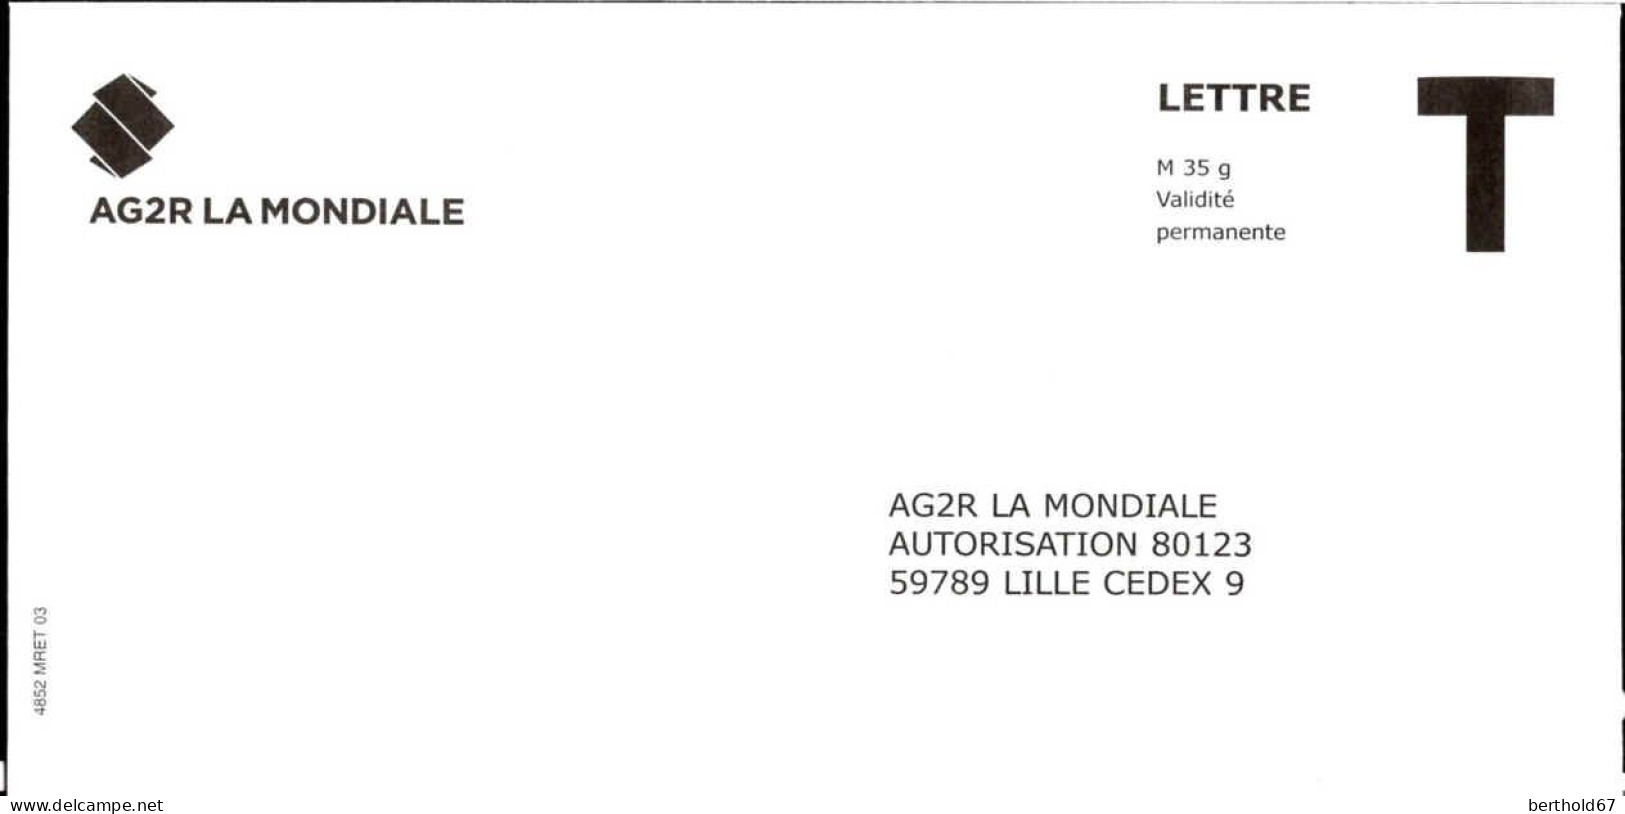 France Entier-P N** (7014) AG2R La Mondiale Autorisation 80123 Lettre M35g V.permanente - Cards/T Return Covers